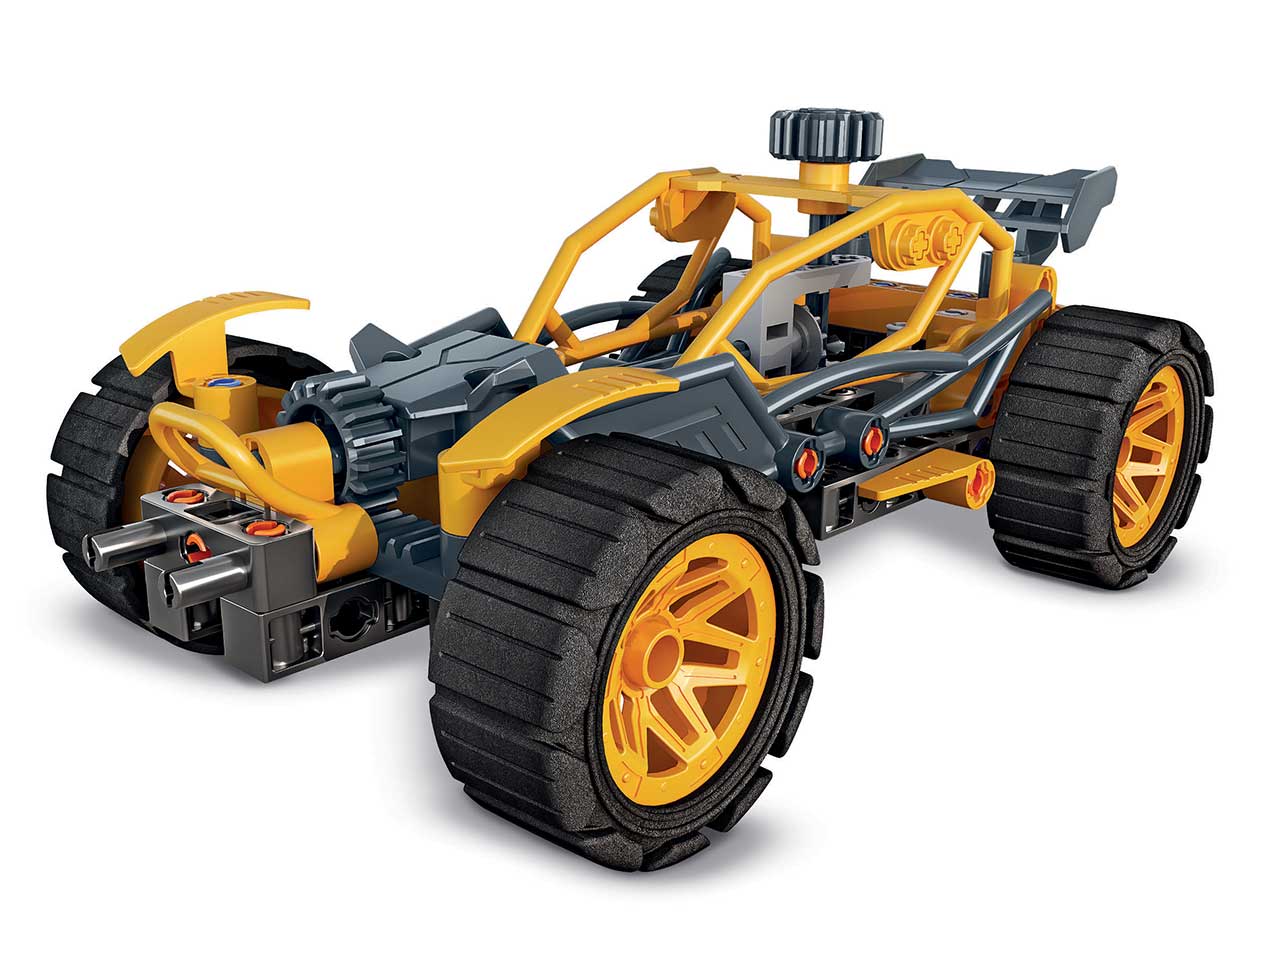 Scienza & gioco build buggy e quad new